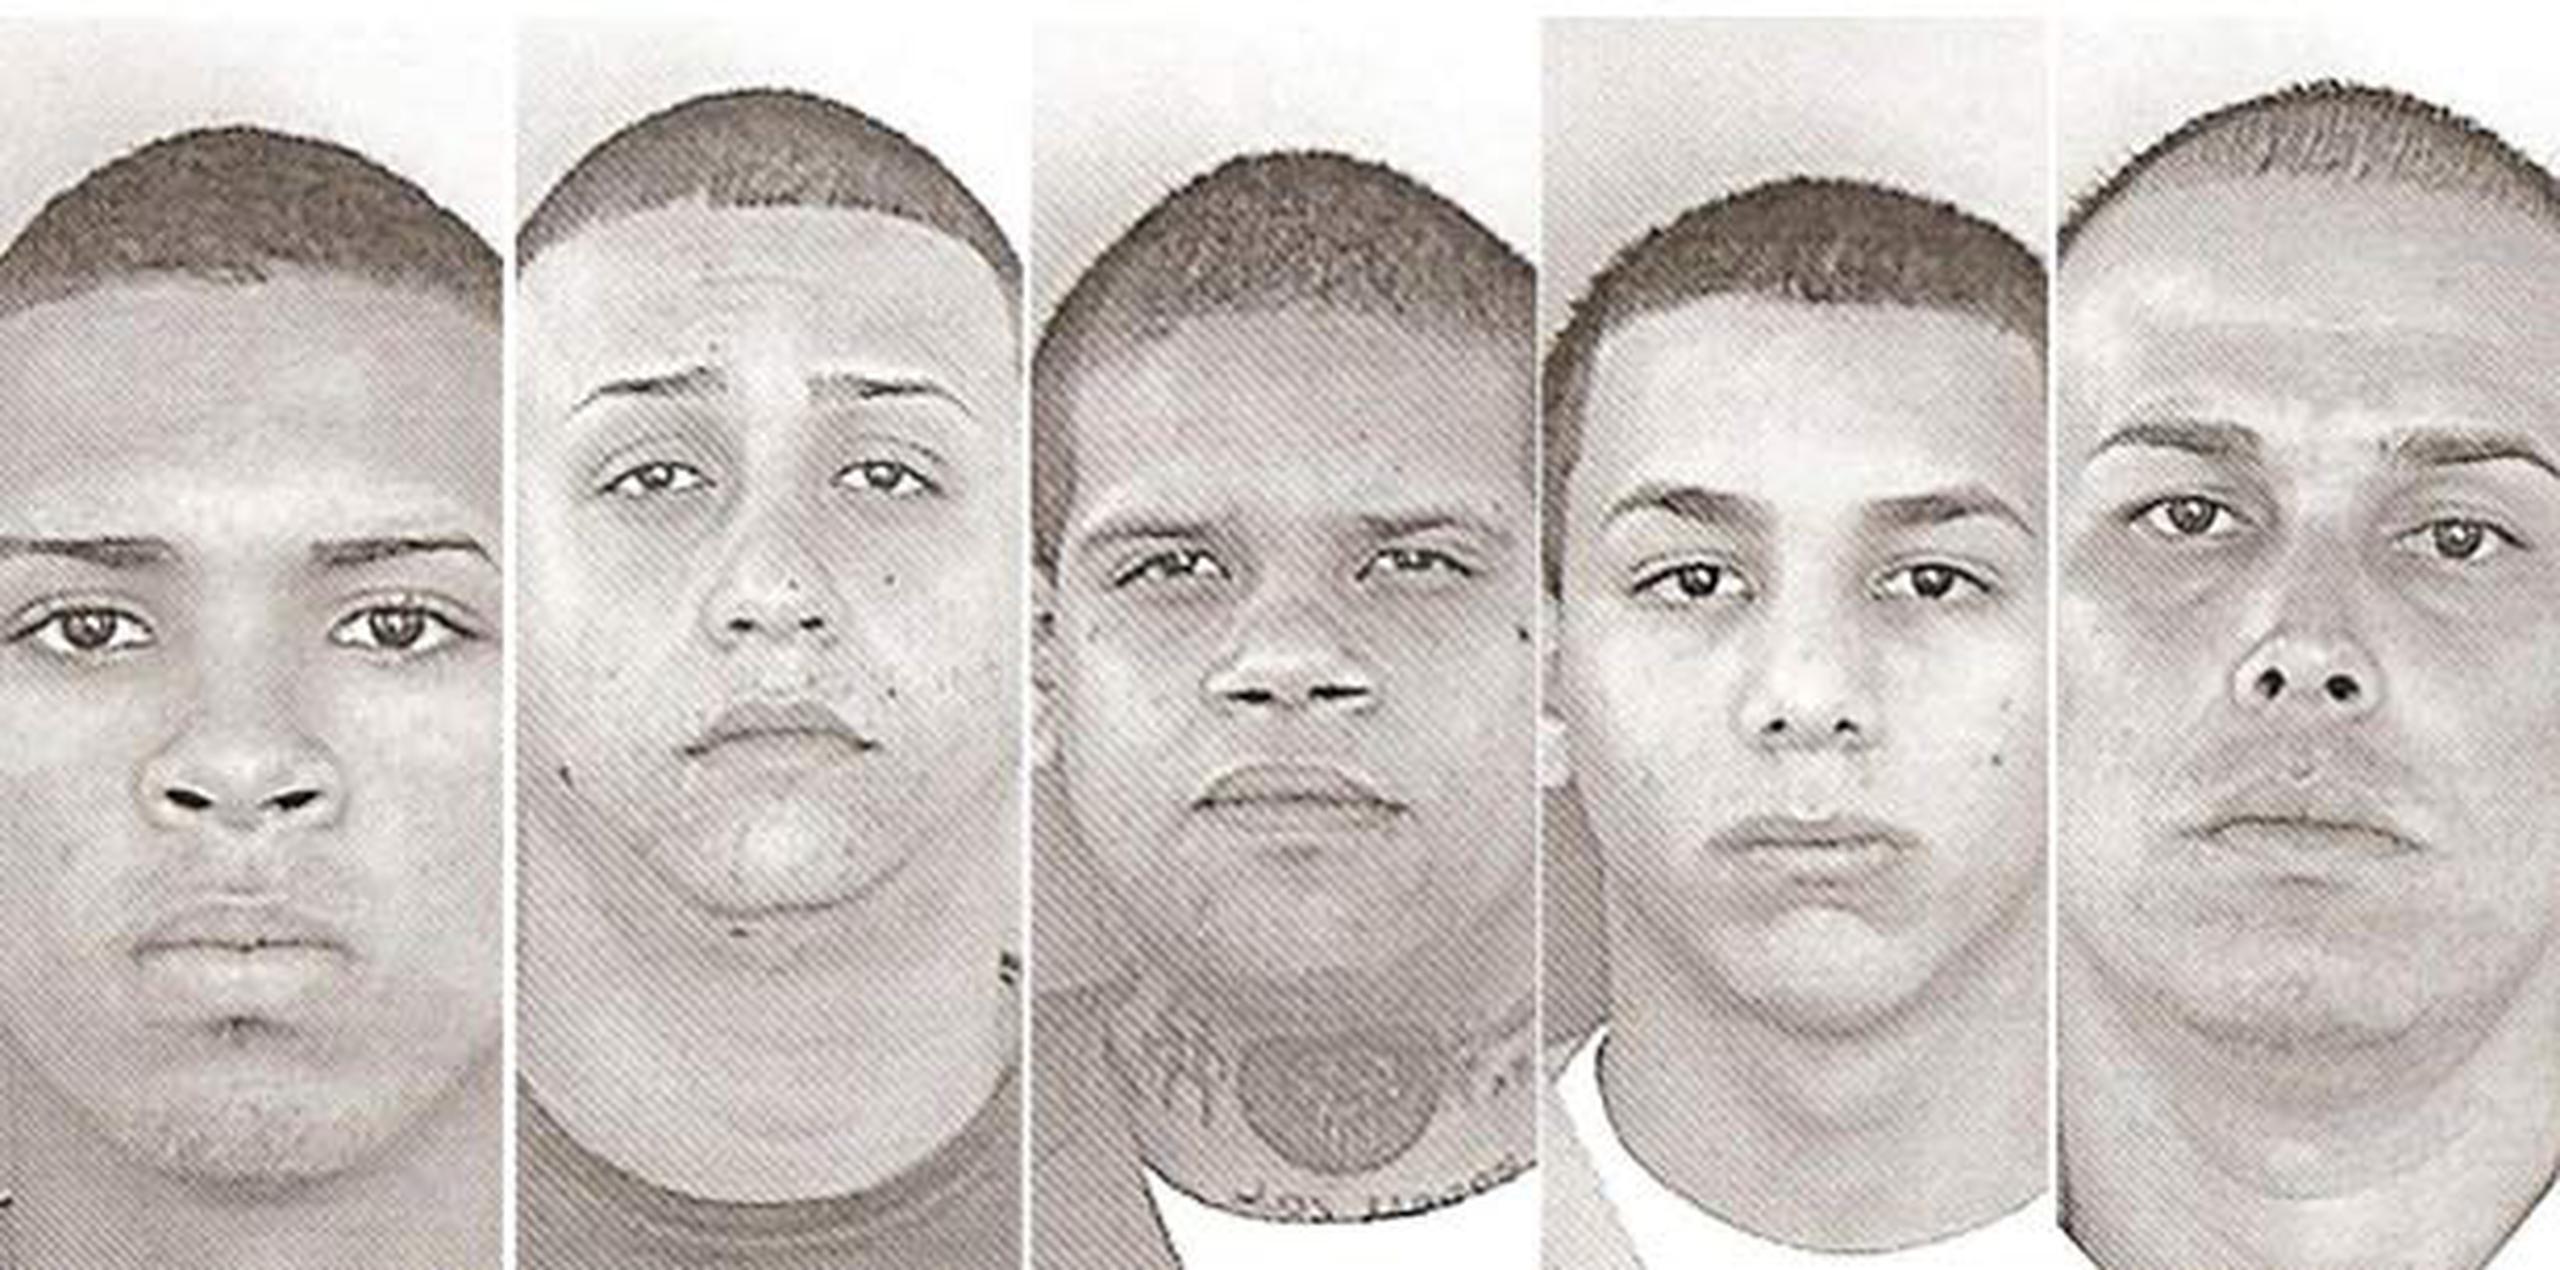 Los cinco jóvenes sentenciados fueron: Ángel D. Morales, Luis Ruiz Luna, Pedro Jiménez Ortiz, Allan J. Soto Camacho y Omar Rodríguez Serrano. (Suministrada)